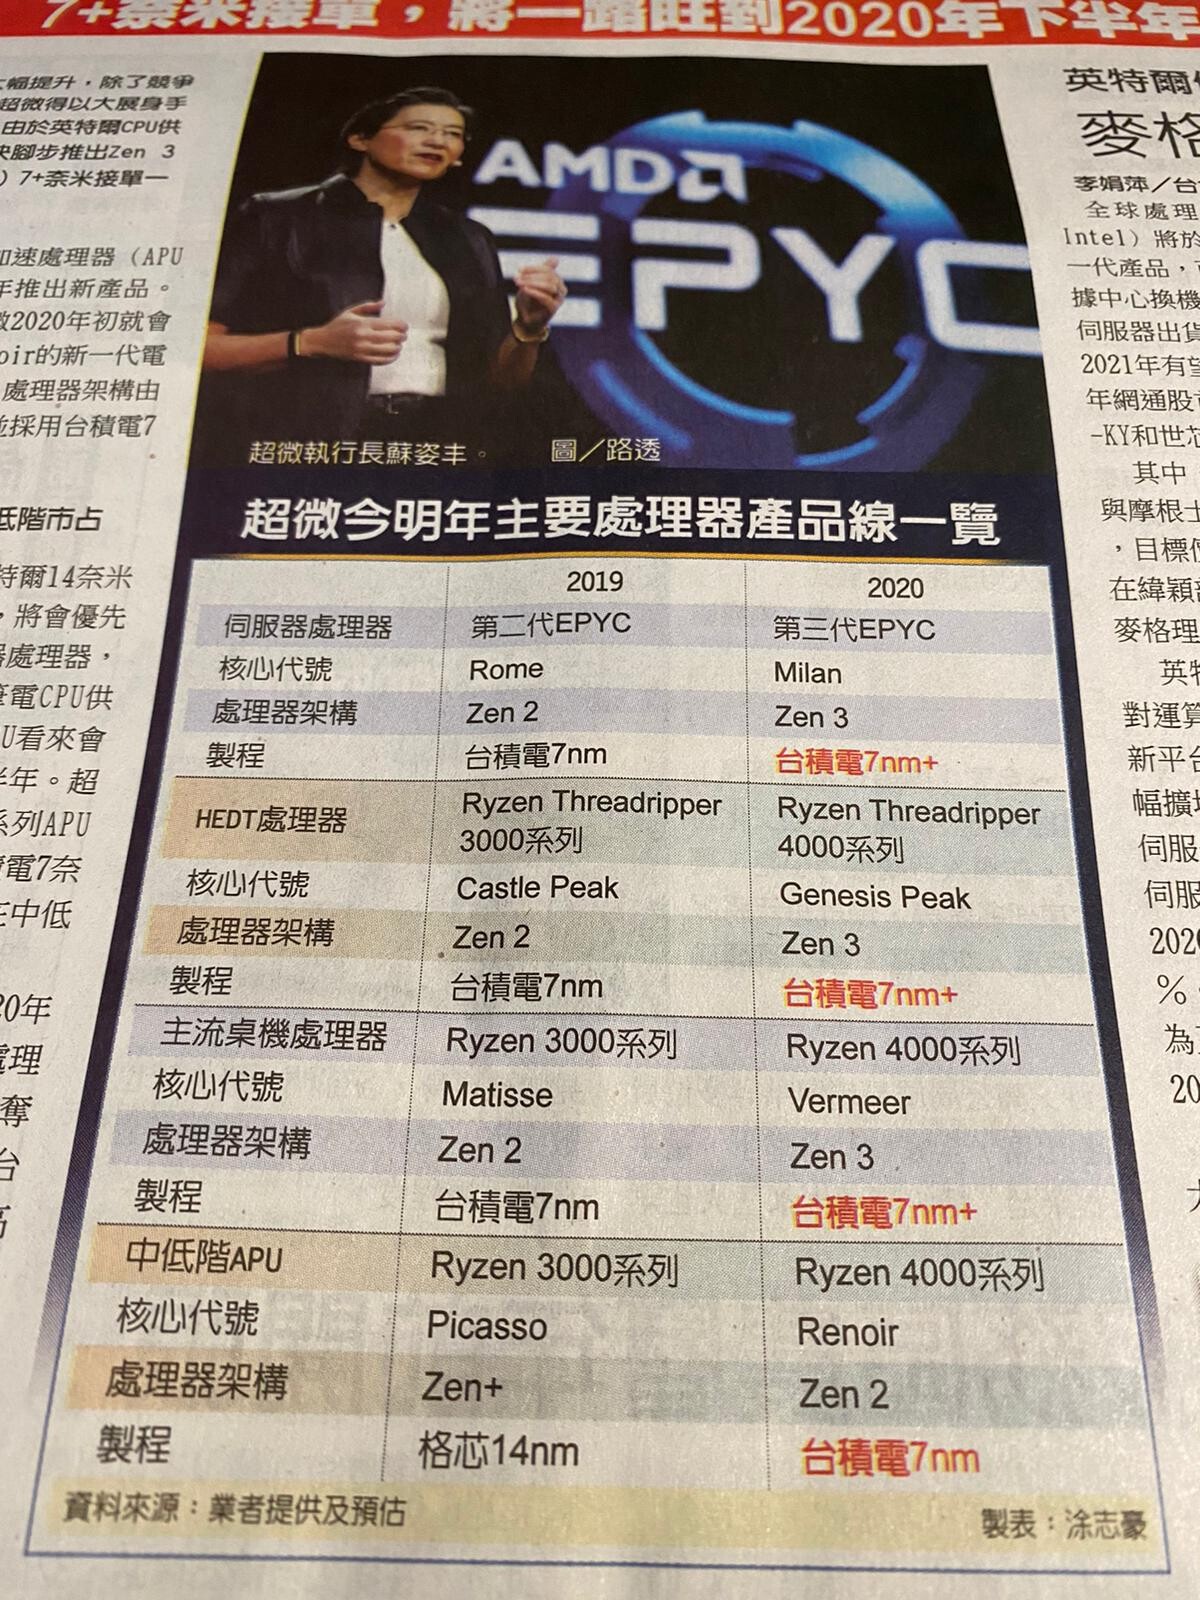 La CEO d'AMD Lisa Su pourrait présenter l'architecture Zen 3 lors du CES 2020